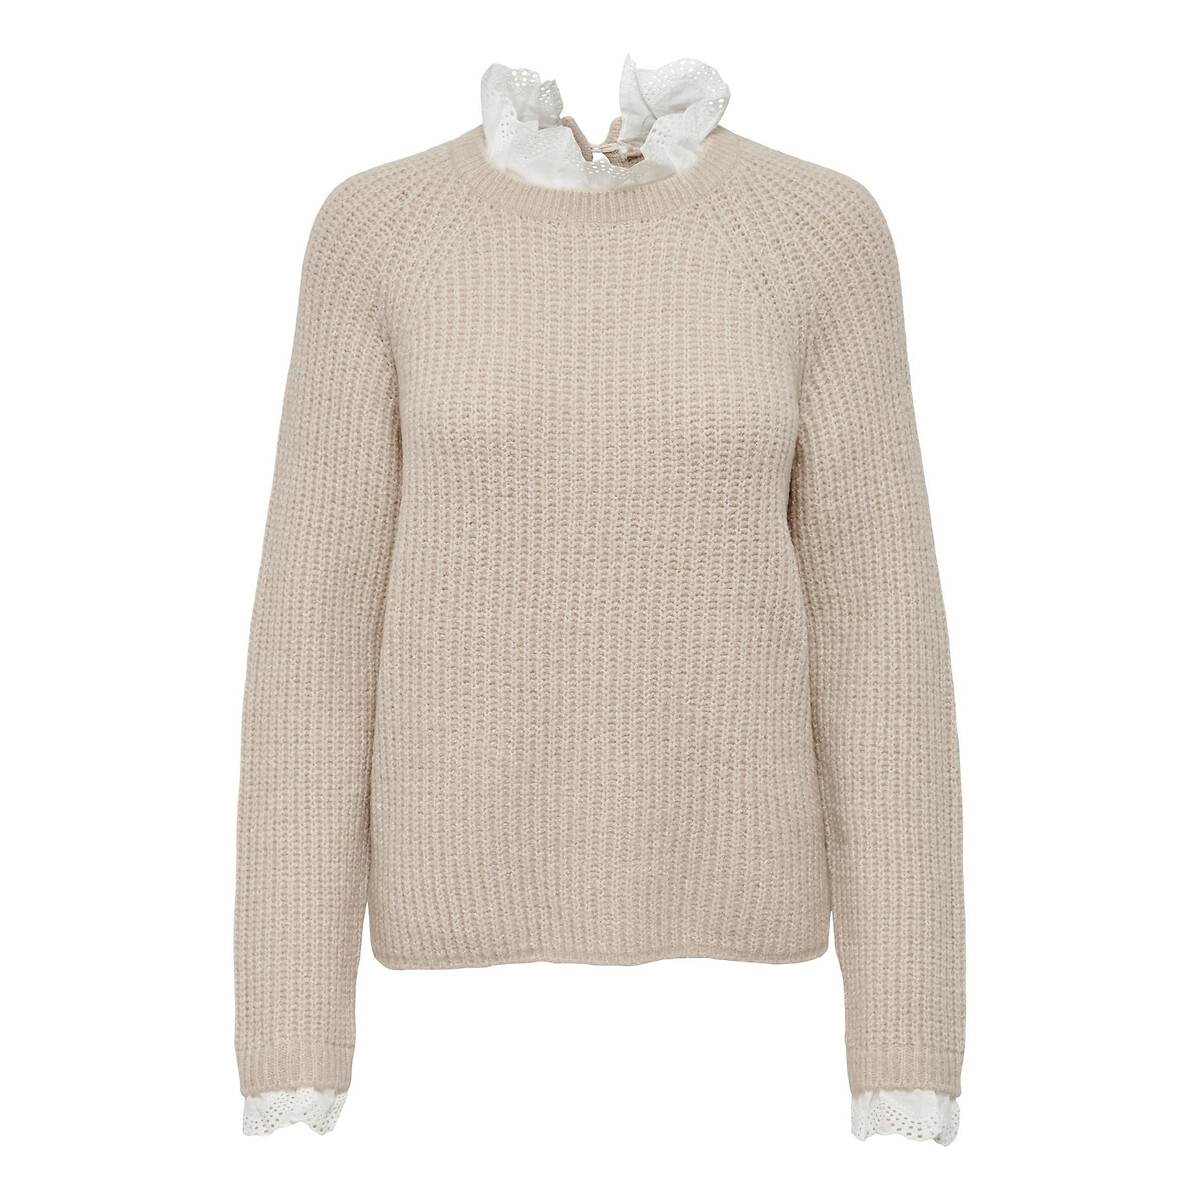 High neck jumper in fine knit, pinky beige, Only Petite | La Redoute